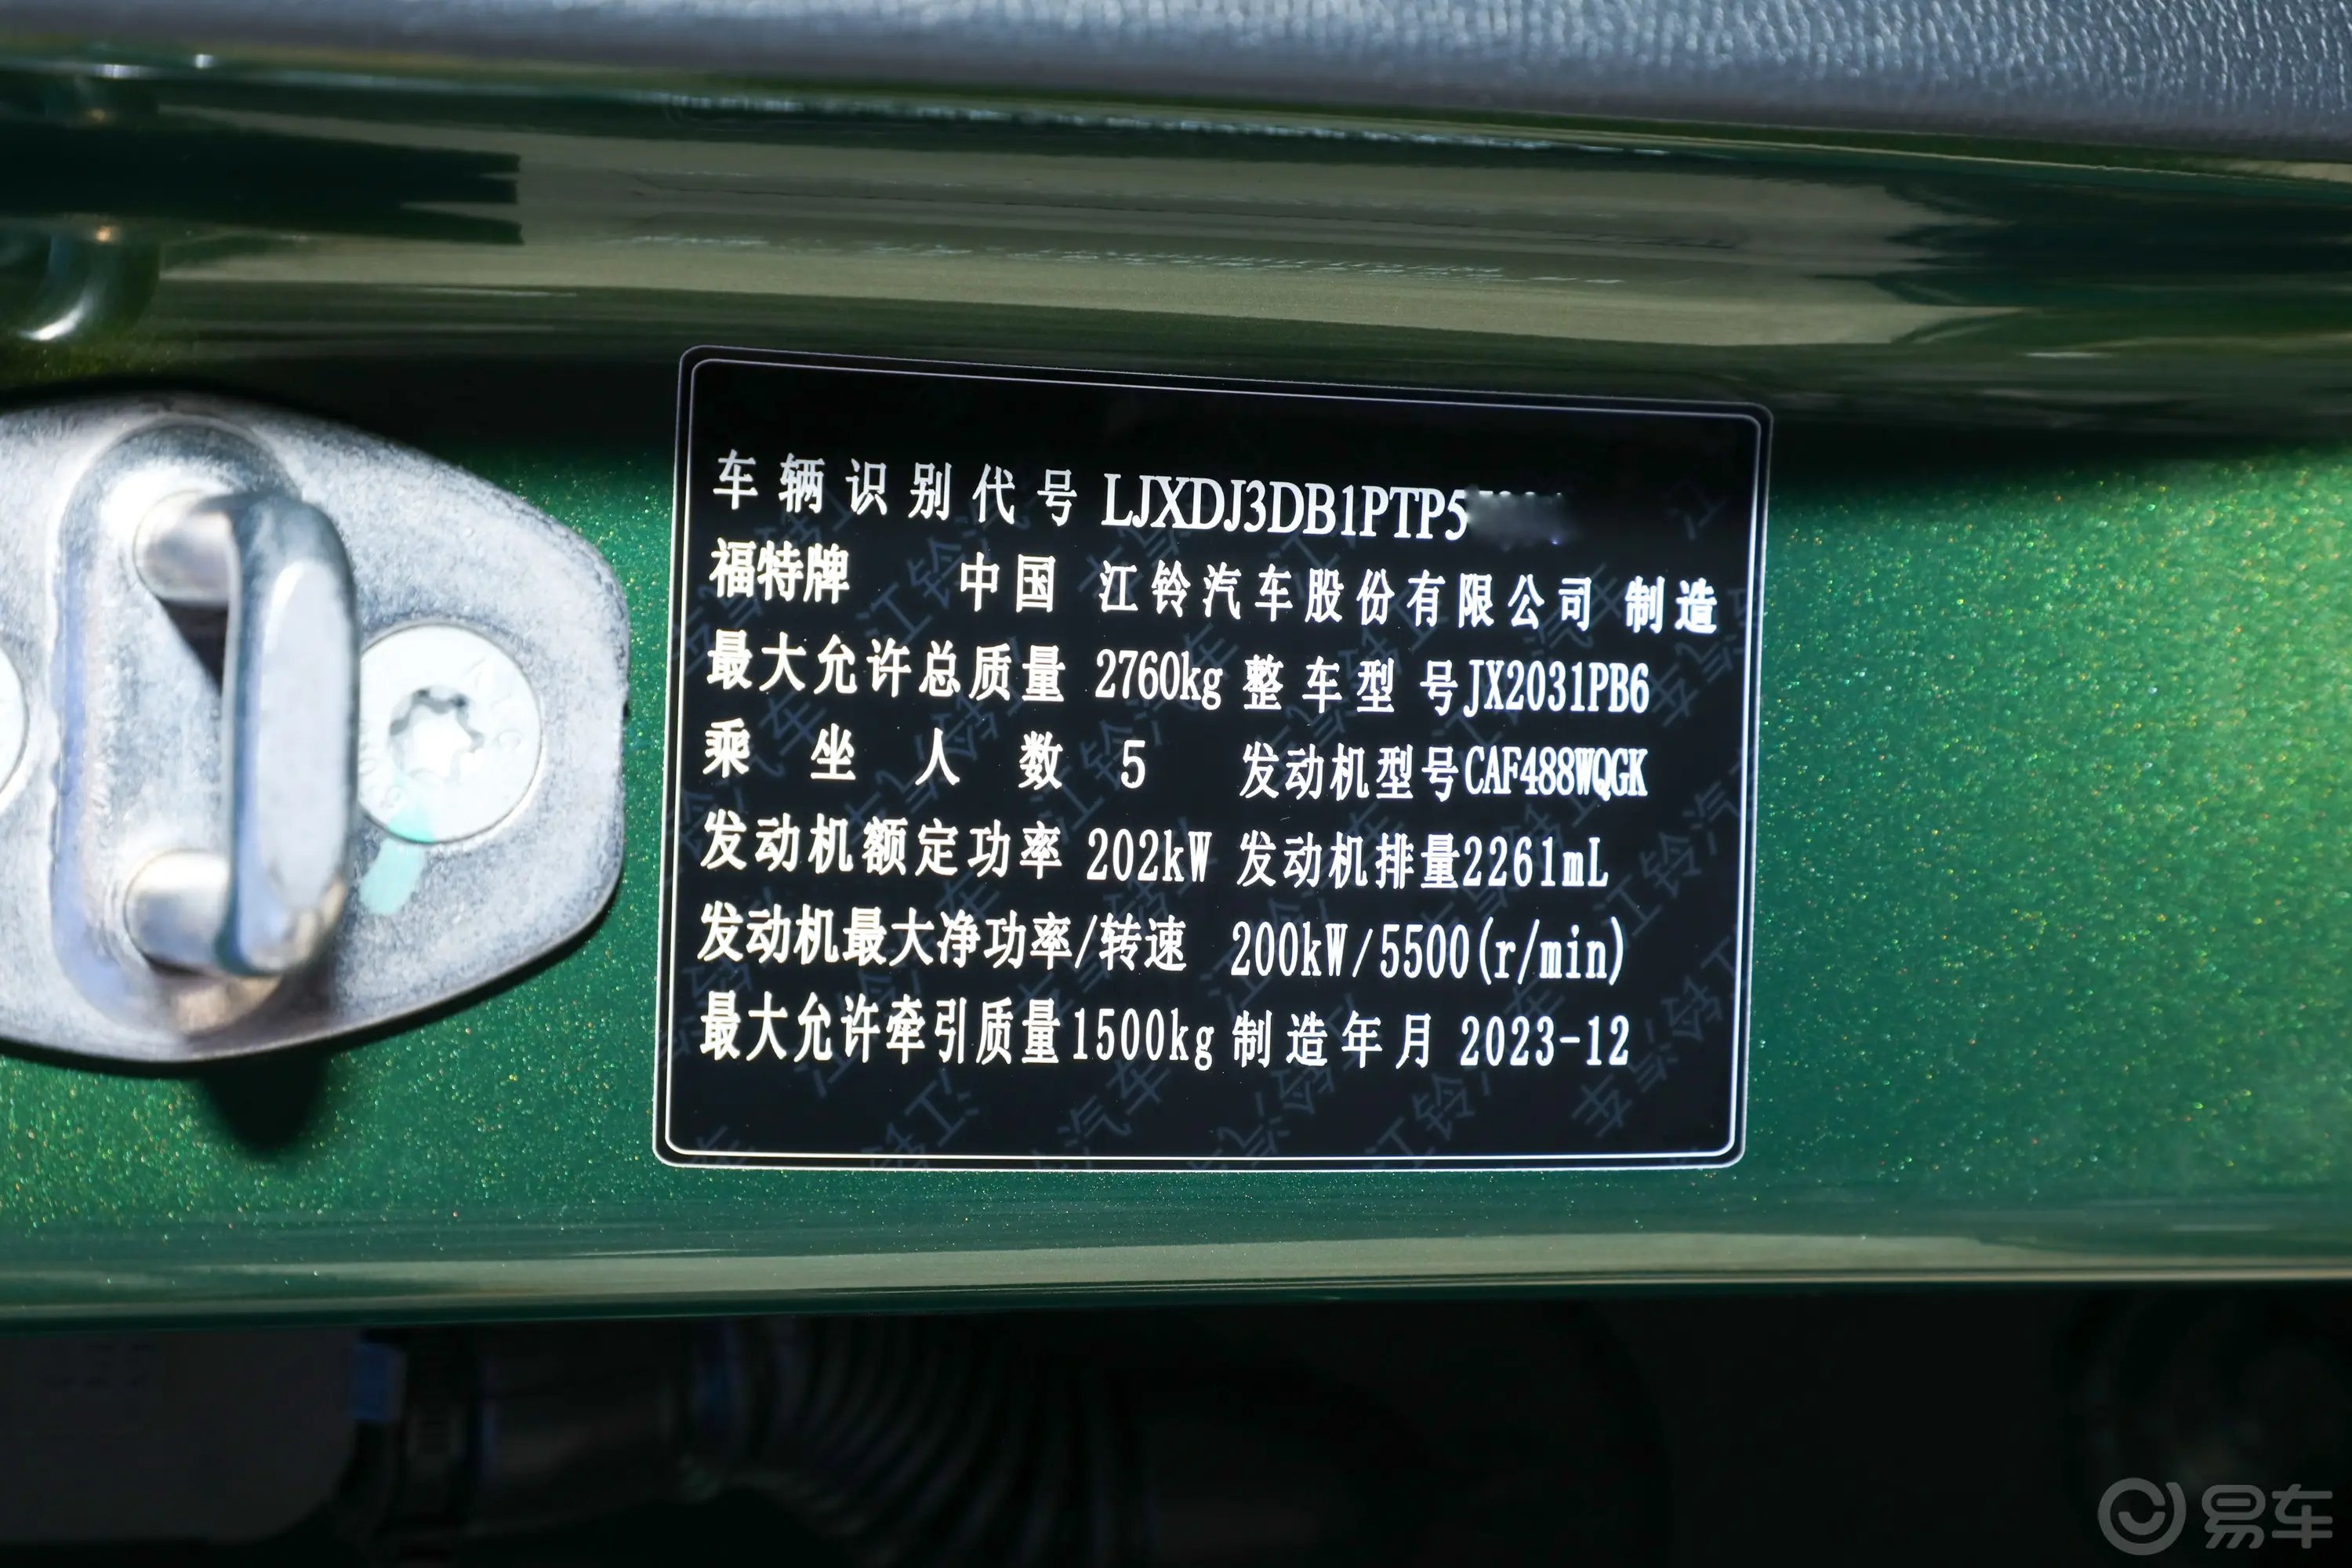 福特烈马2.3T 大沼泽地特别限量款车辆信息铭牌